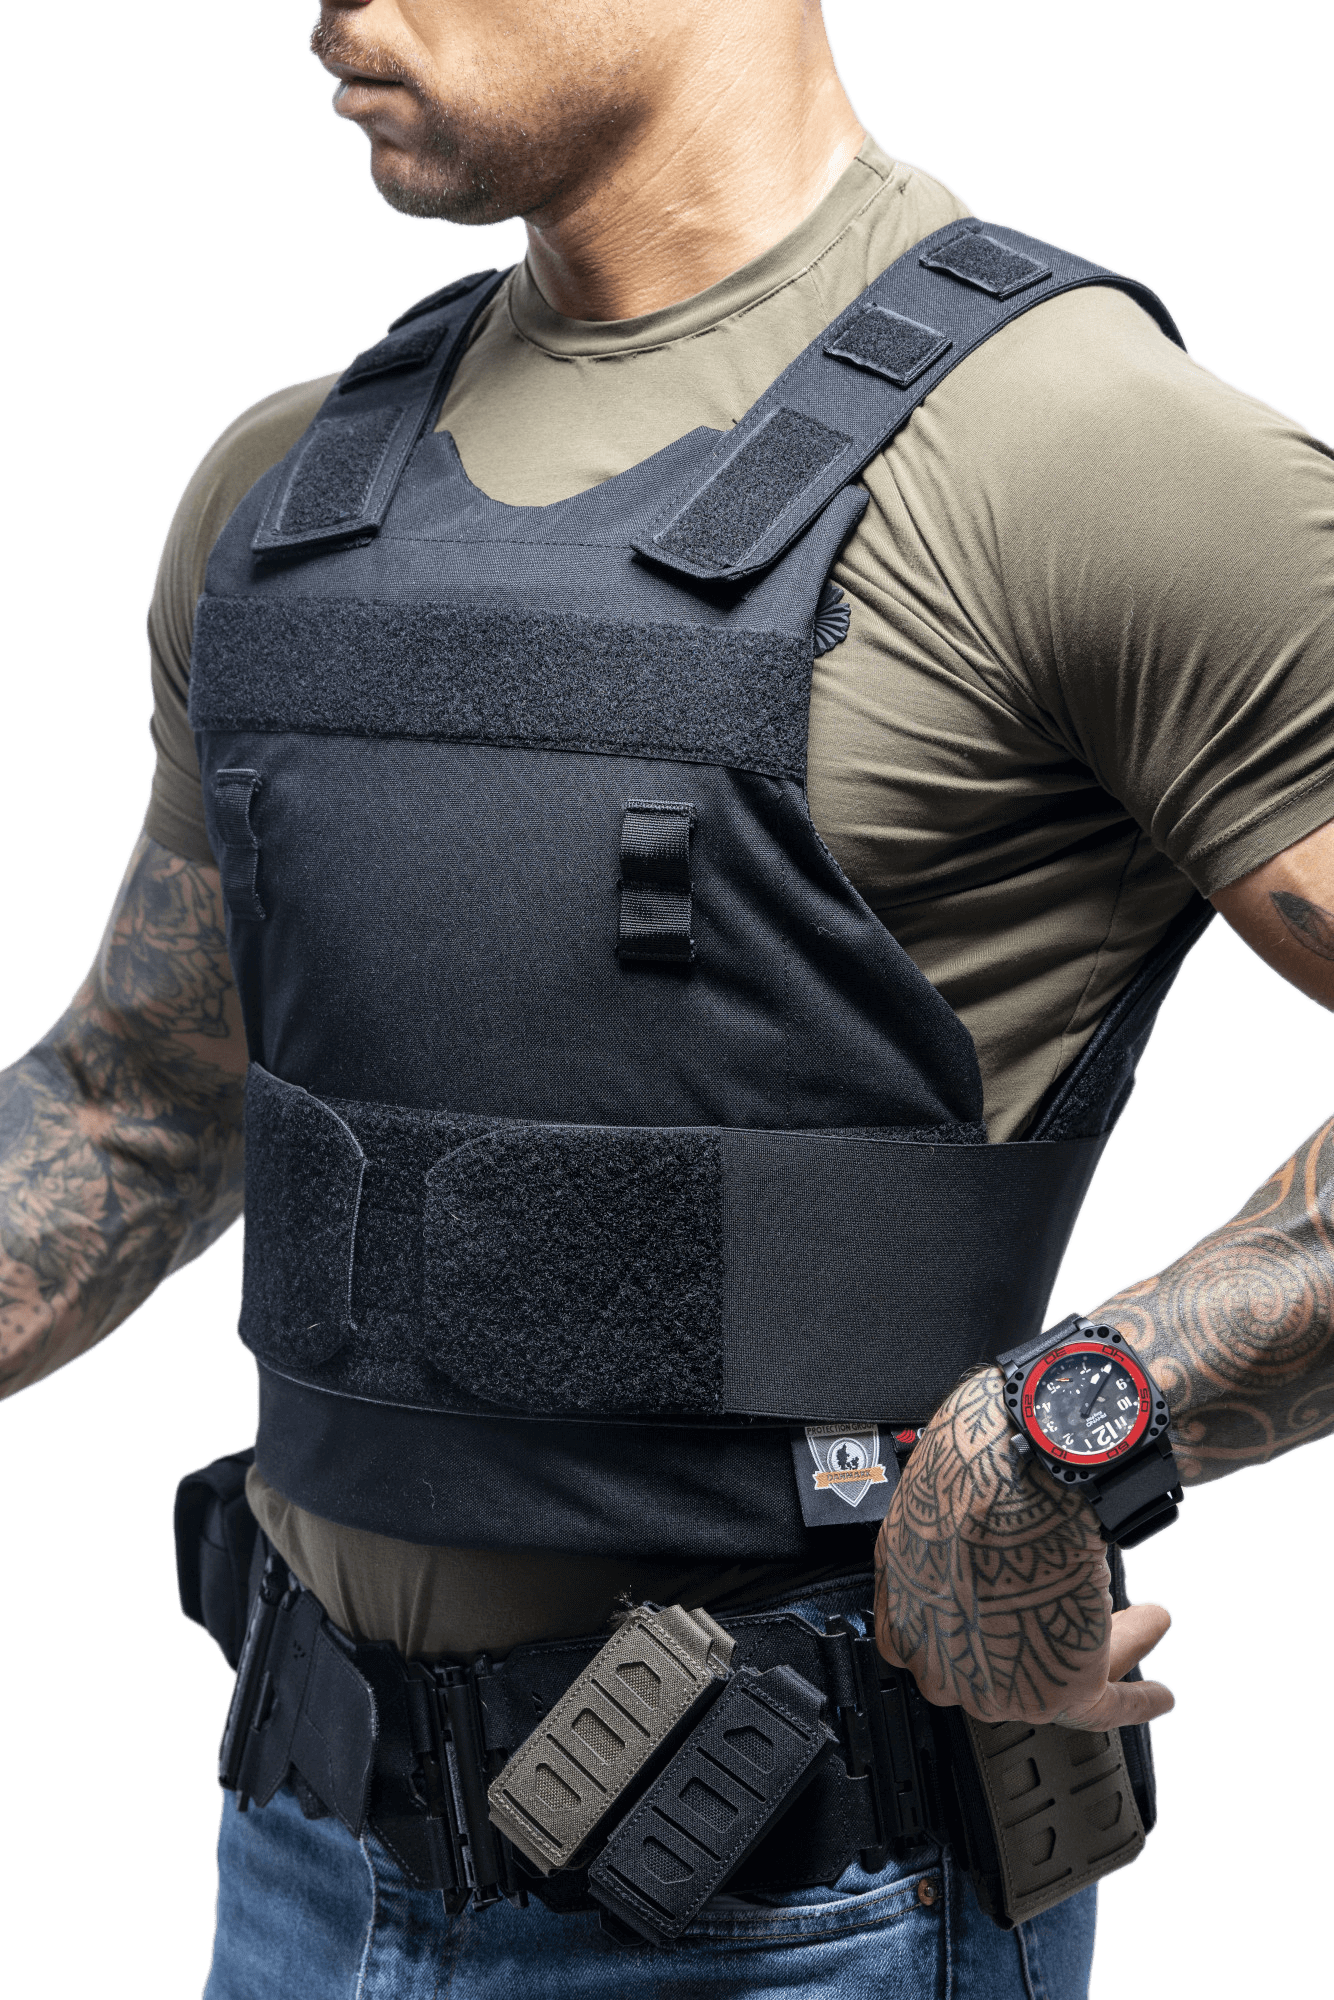 How Bulletproof Are Bulletproof Vests?